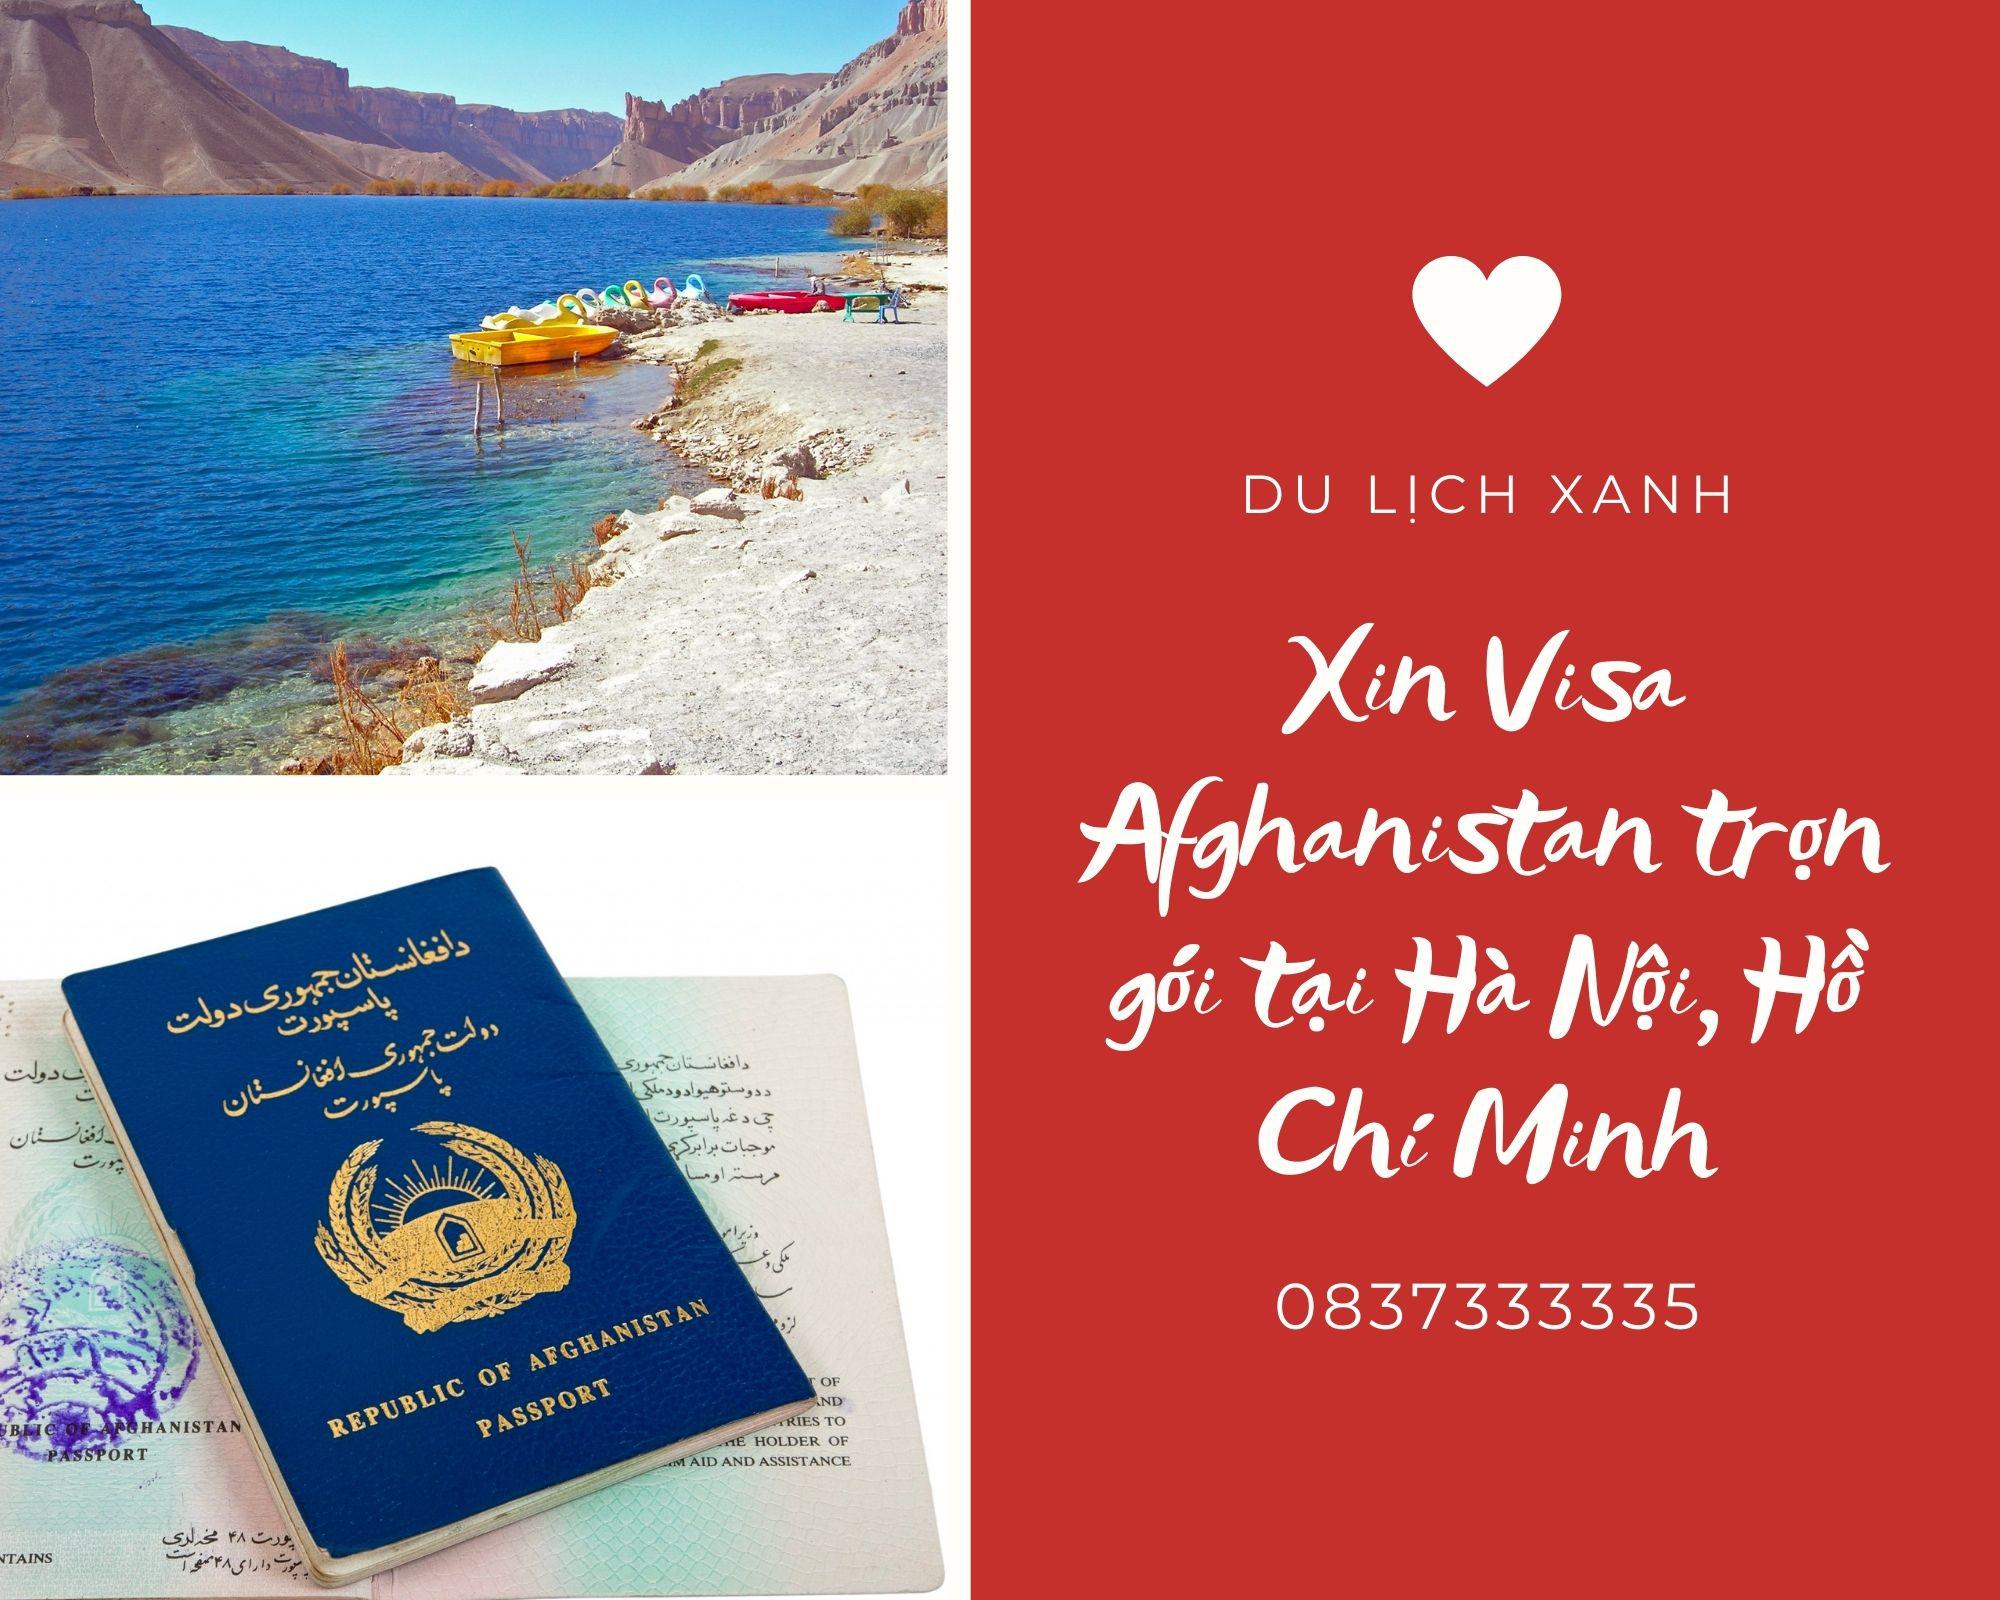 Xin Visa Afghanistan trọn gói tại Hà Nội, Hồ Chí Minh